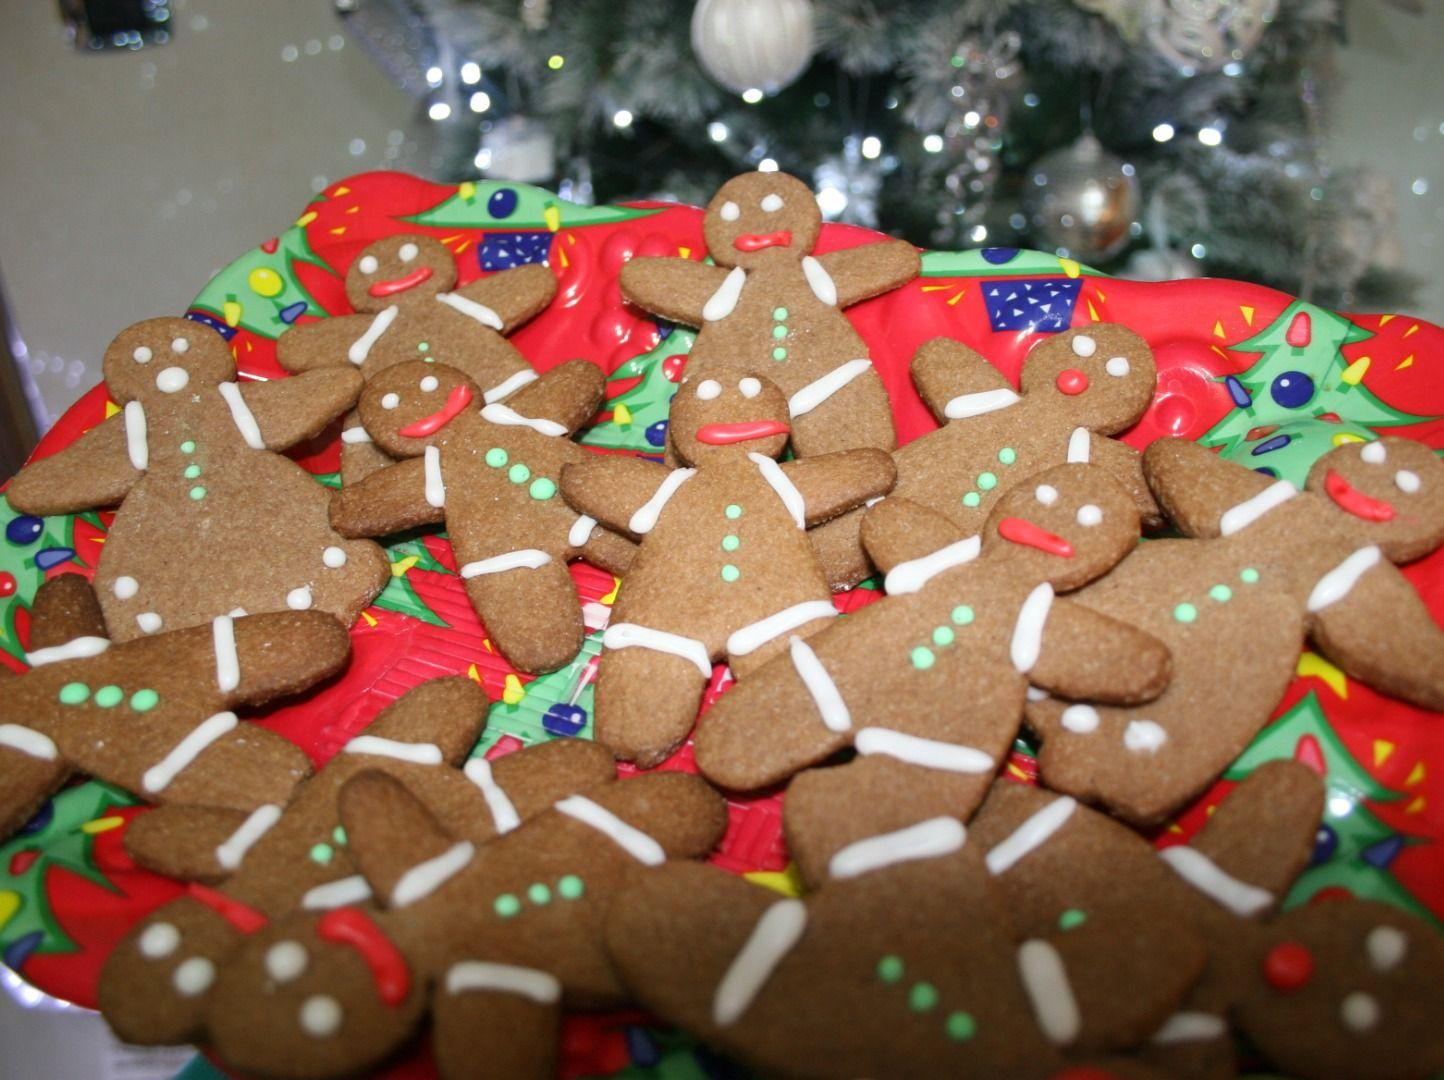 Gingerbread men (Omini di pan di zenzero)